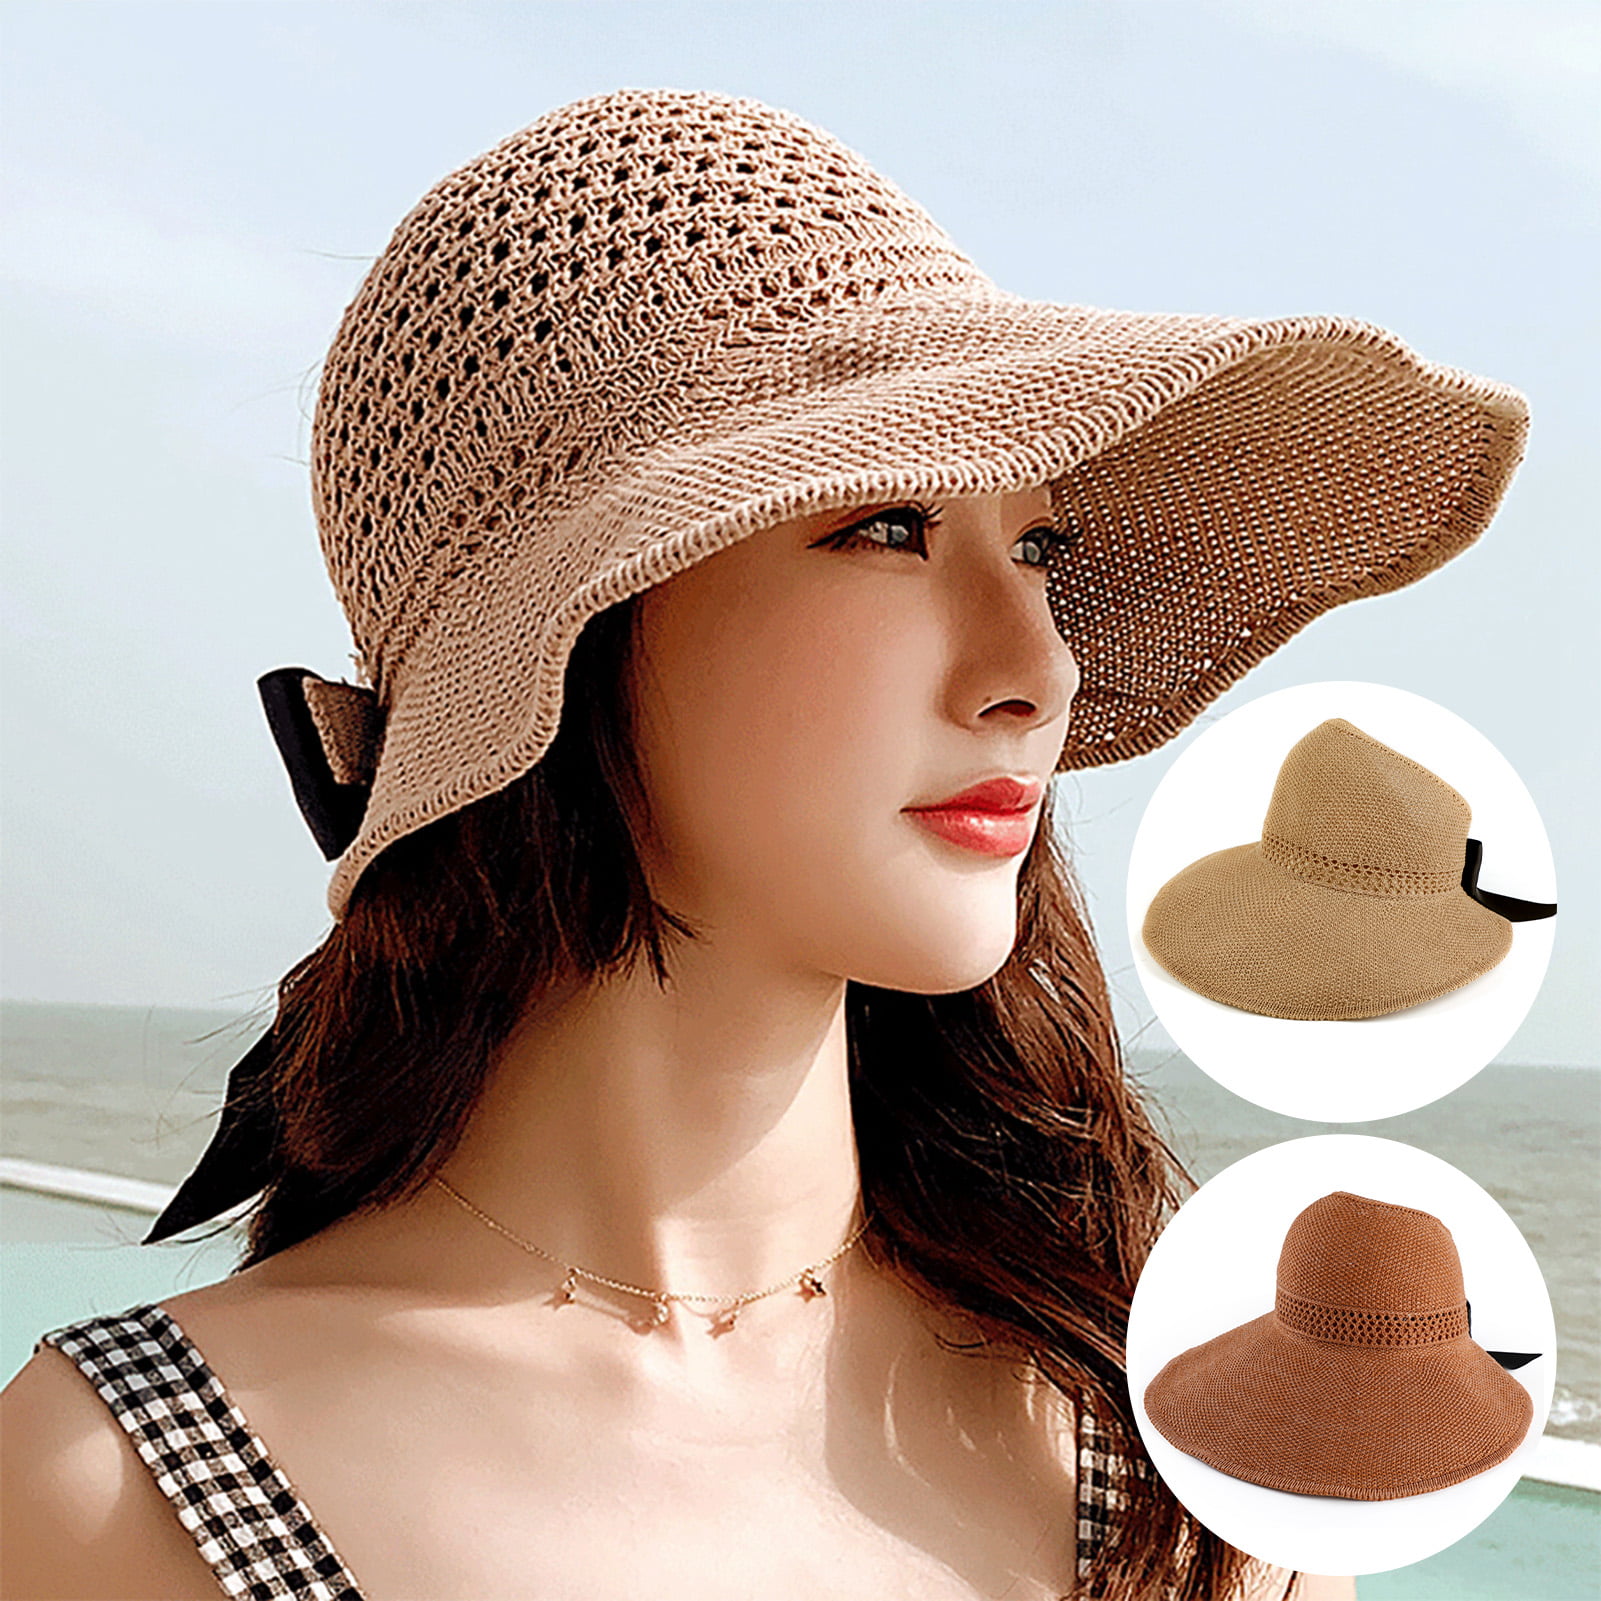 Weave Felt Material Hat Sun Hats for Women Large Brim Cotton Hats Beach Summer Caps 